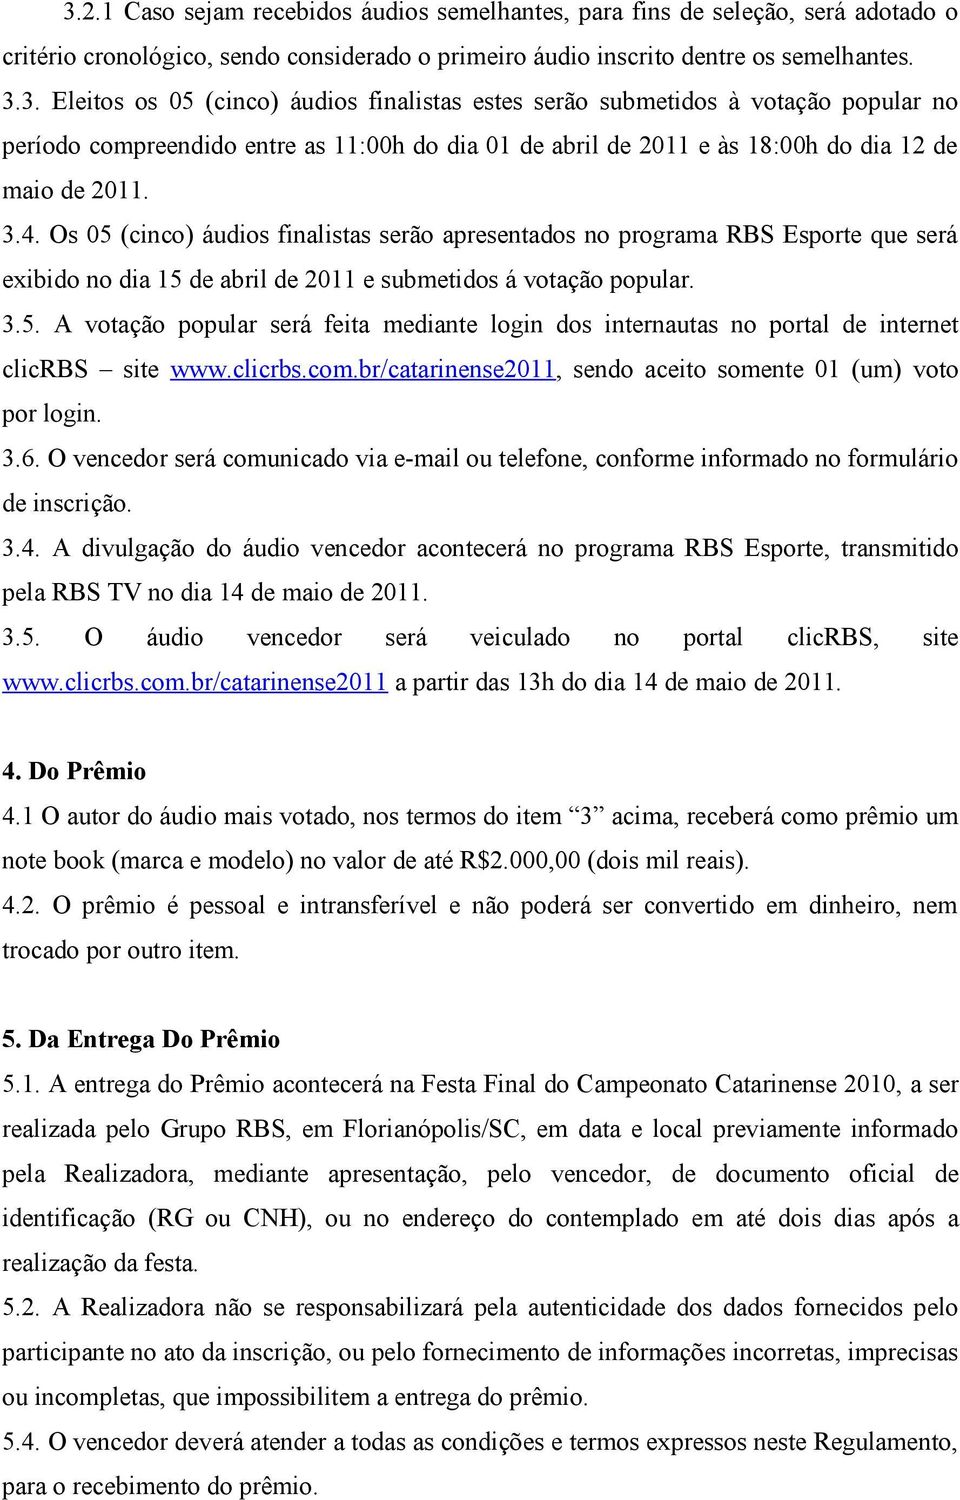 clicrbs.com.br/catarinense2011, sendo aceito somente 01 (um) voto por login. 3.6. O vencedor será comunicado via e-mail ou telefone, conforme informado no formulário de inscrição. 3.4.